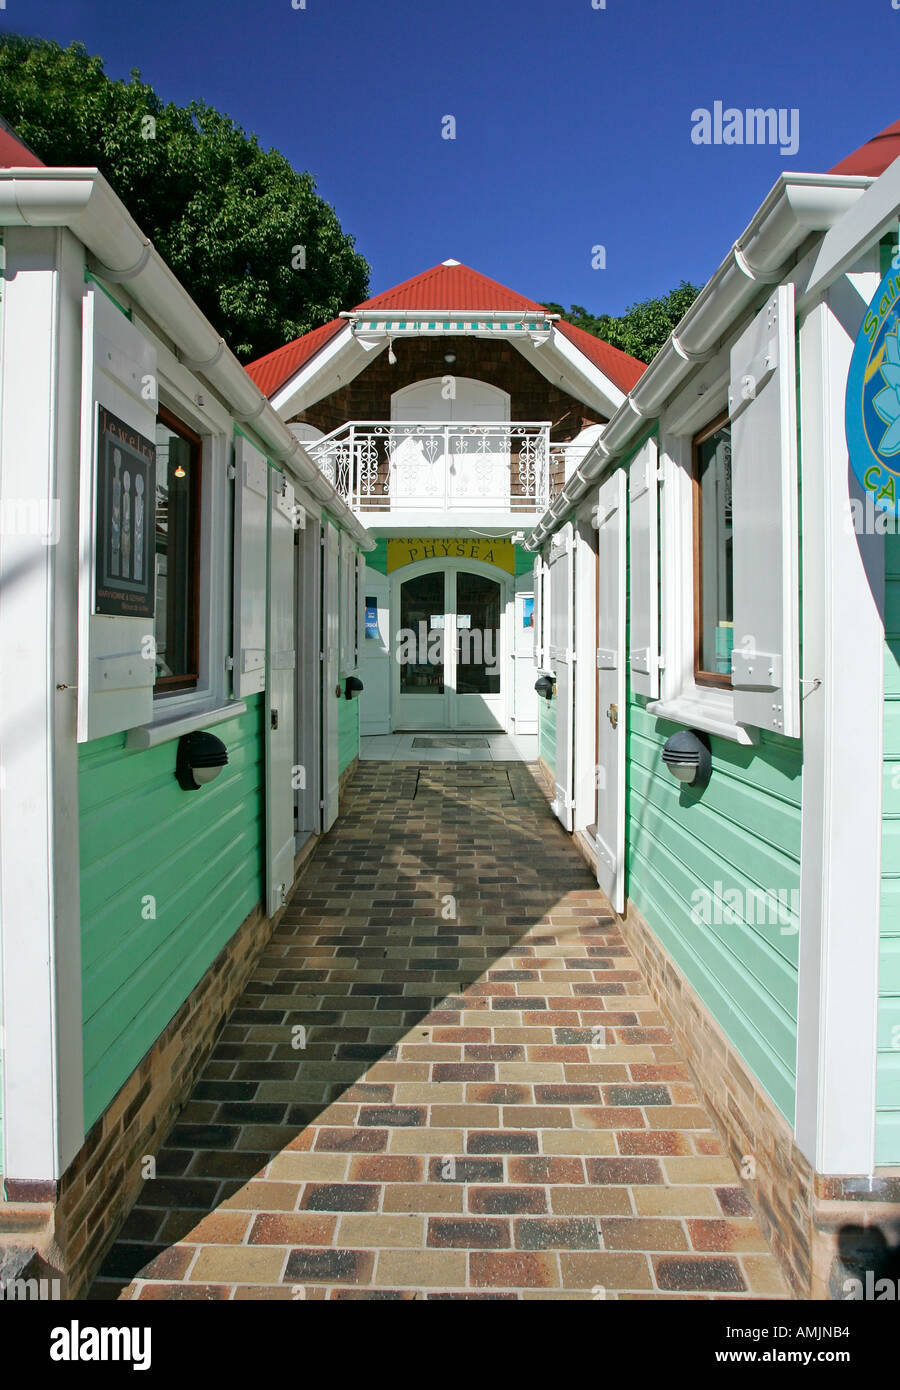 Verde pastello negozi boutique con persiane Gustavia St Barts Foto Stock